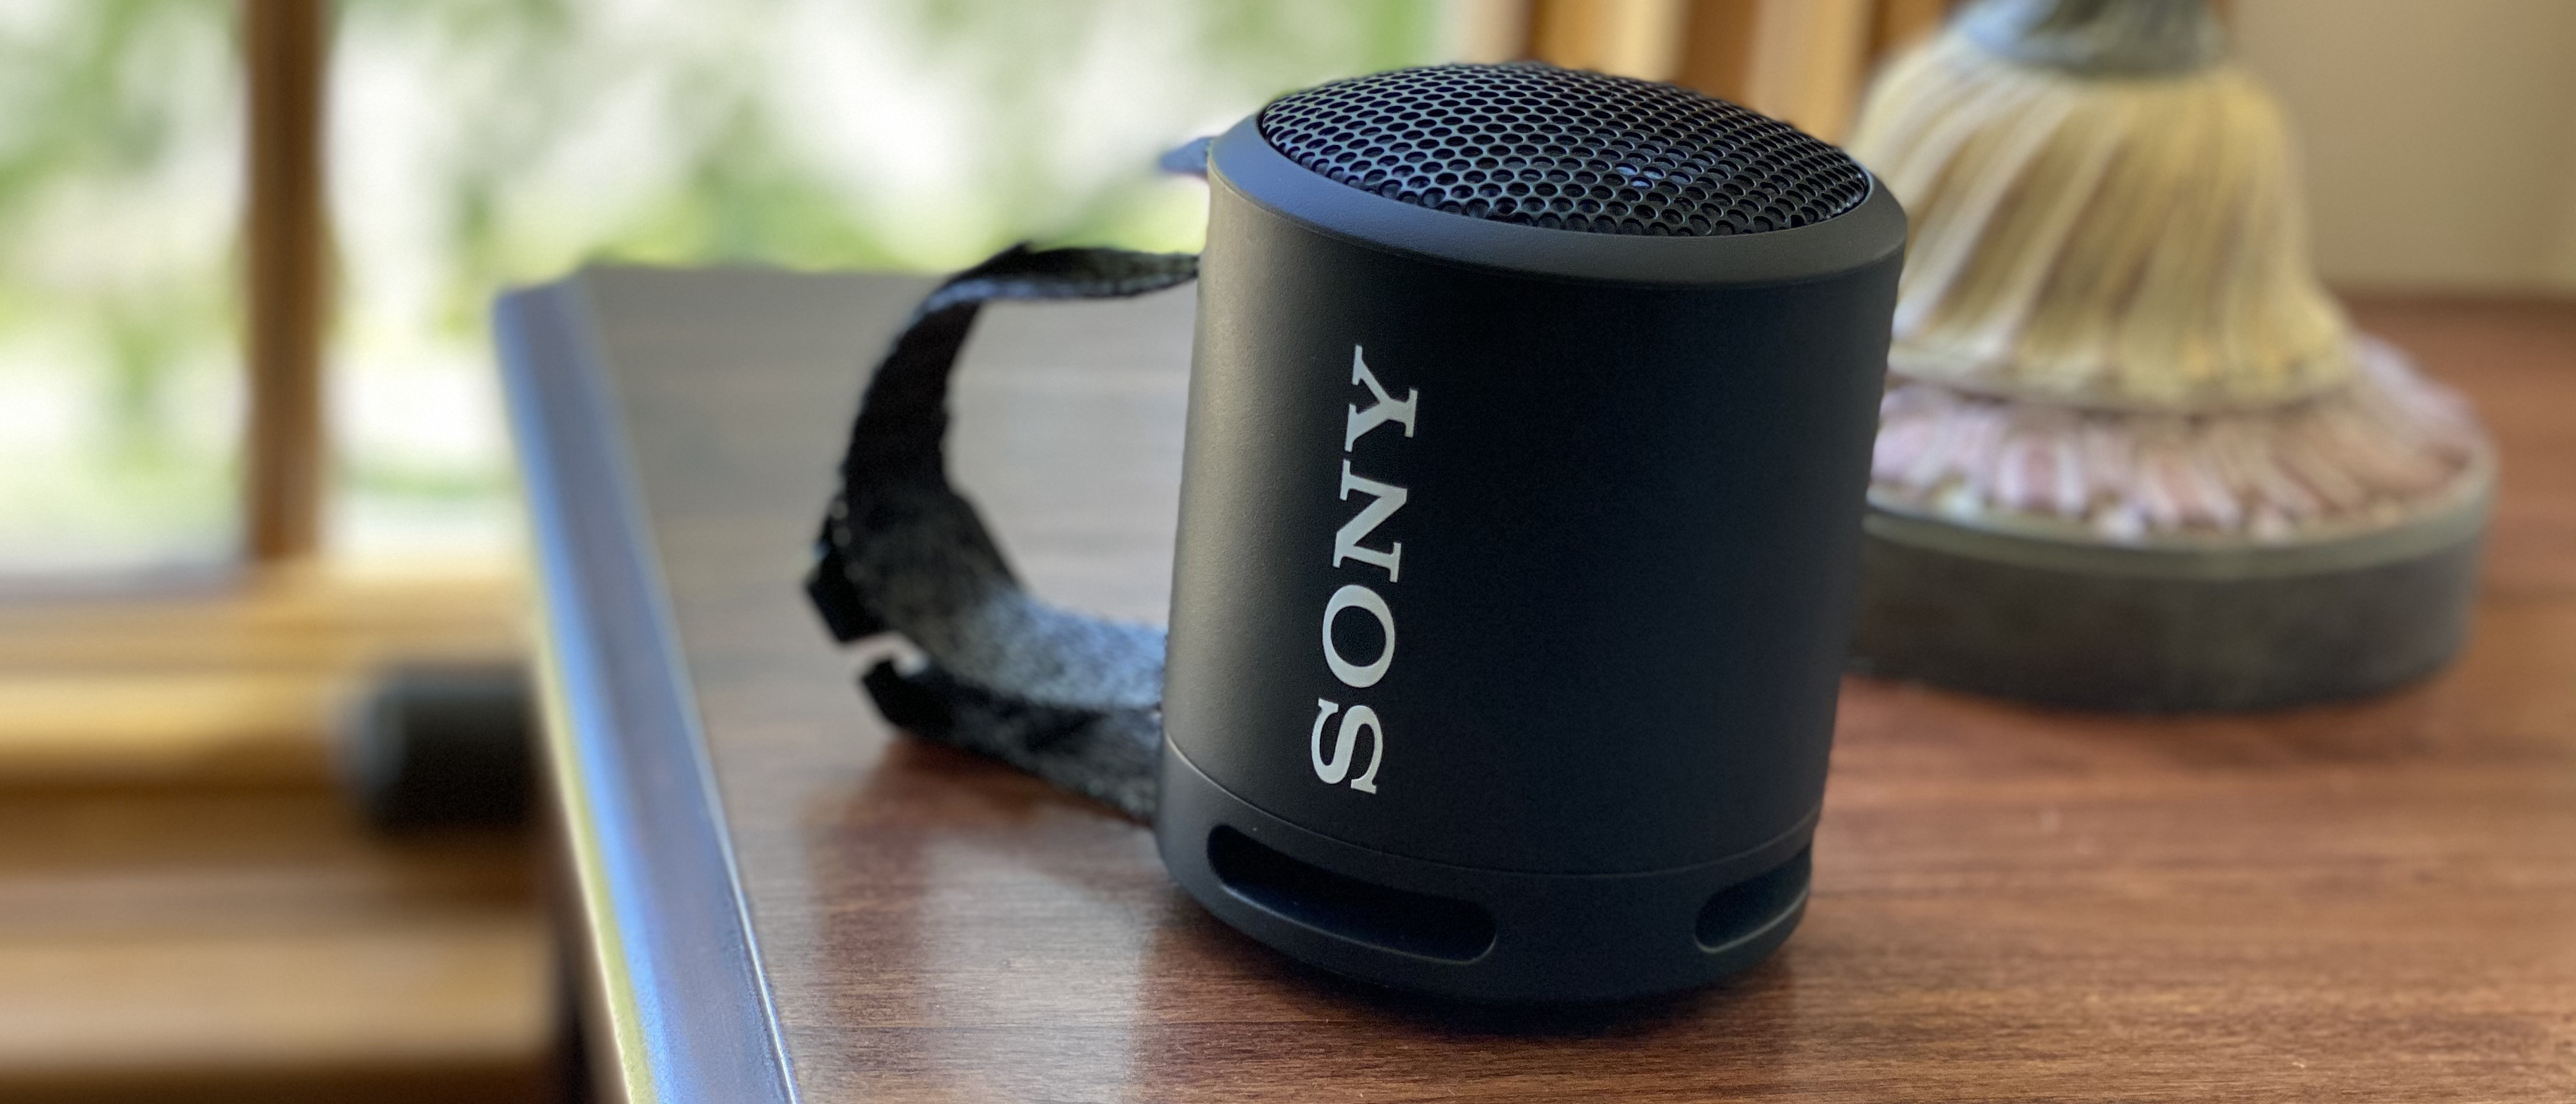 Speaker TechRadar review SRS-XB13 Sony Bluetooth |